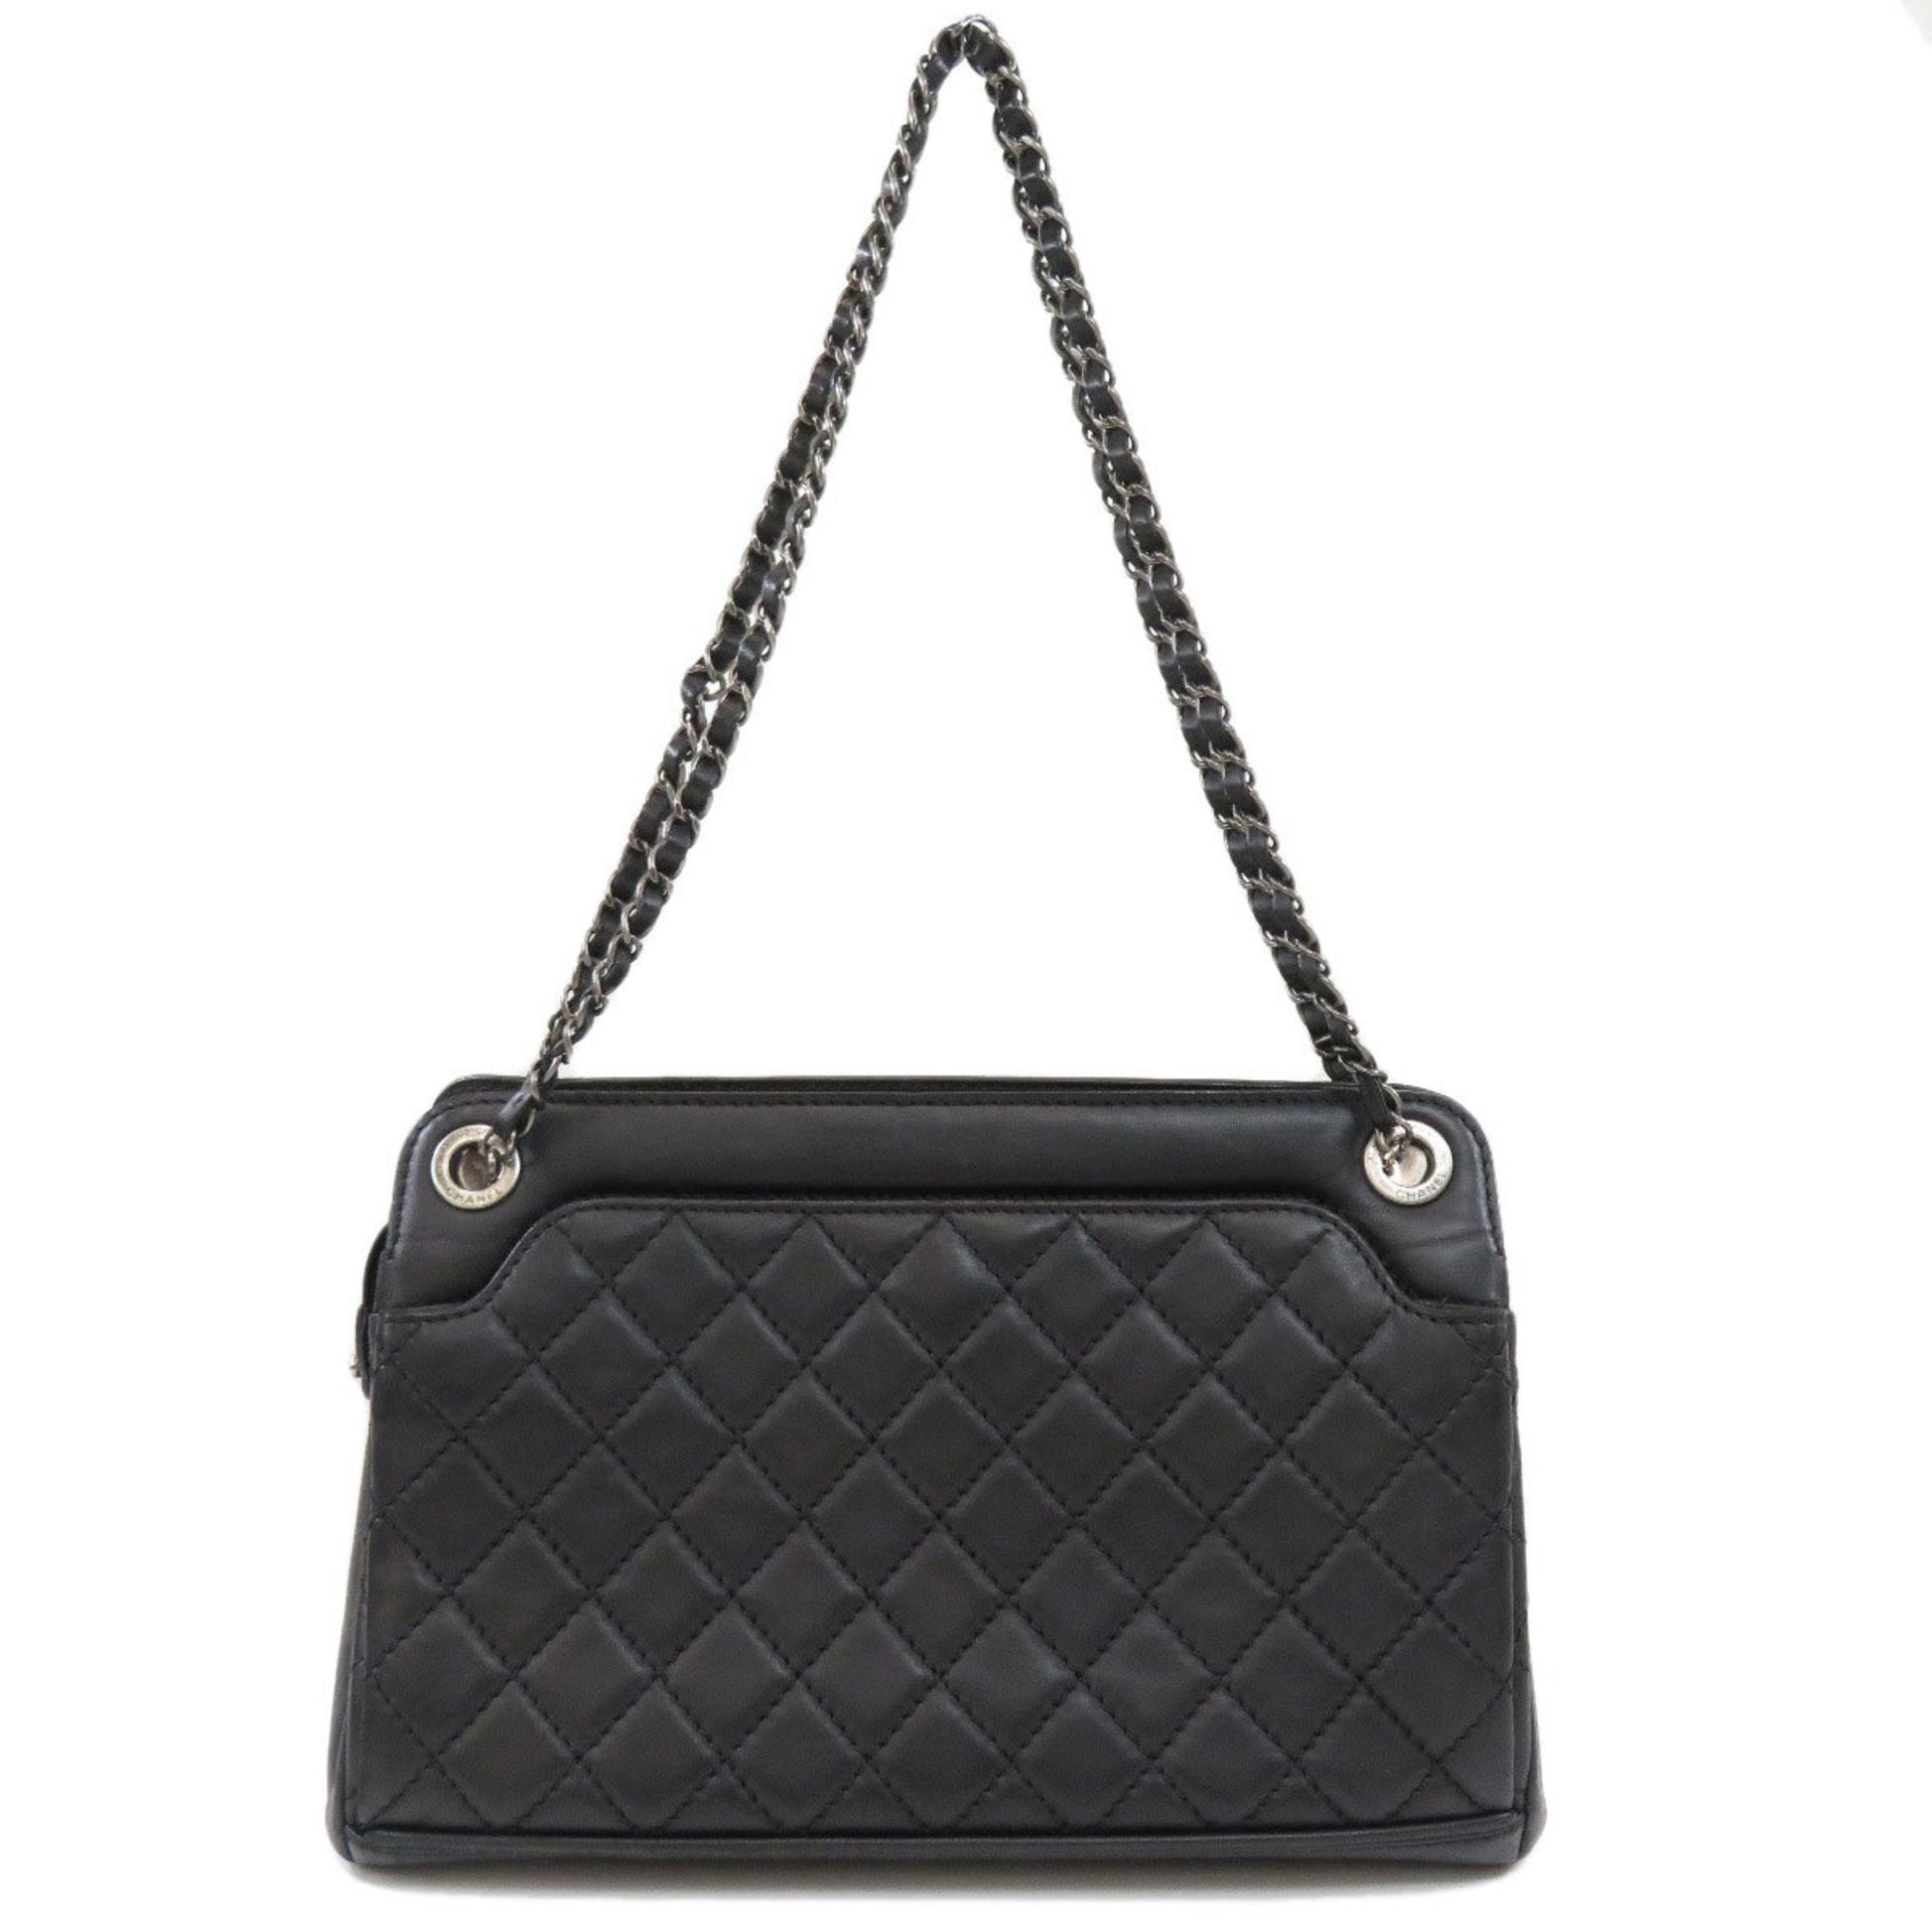 US$ 250.80 - Chanel Top Classic Cf 23 cm Flap Handbag Shoulder